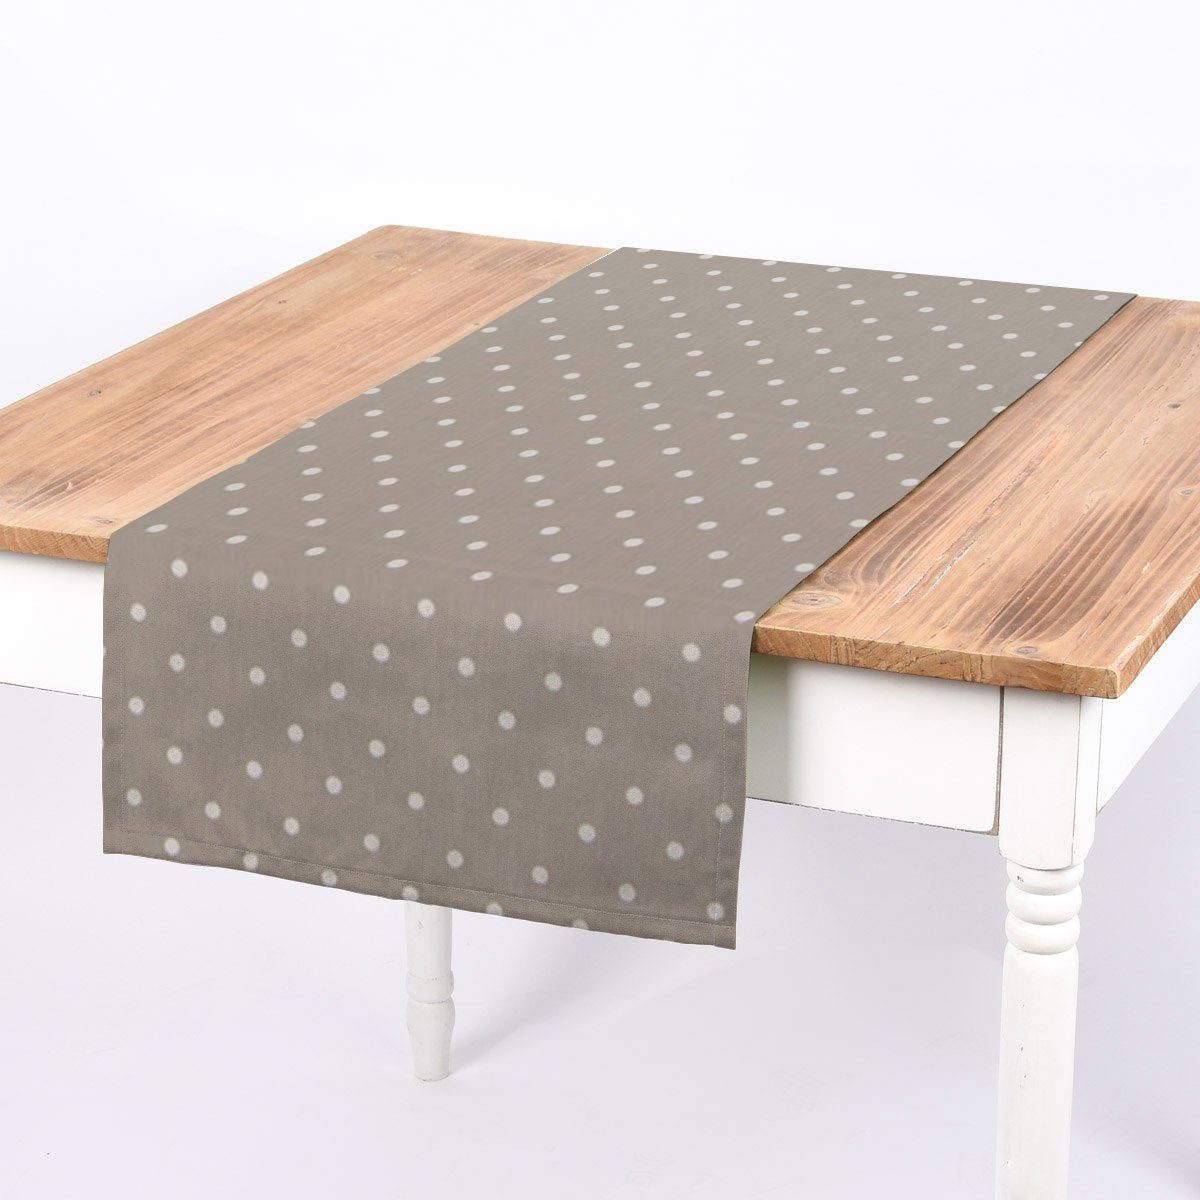 SCHÖNER LEBEN. Tischläufer SCHÖNER LEBEN. Tischläufer Full Stop Punkte grau weiß 40x160cm, handmade